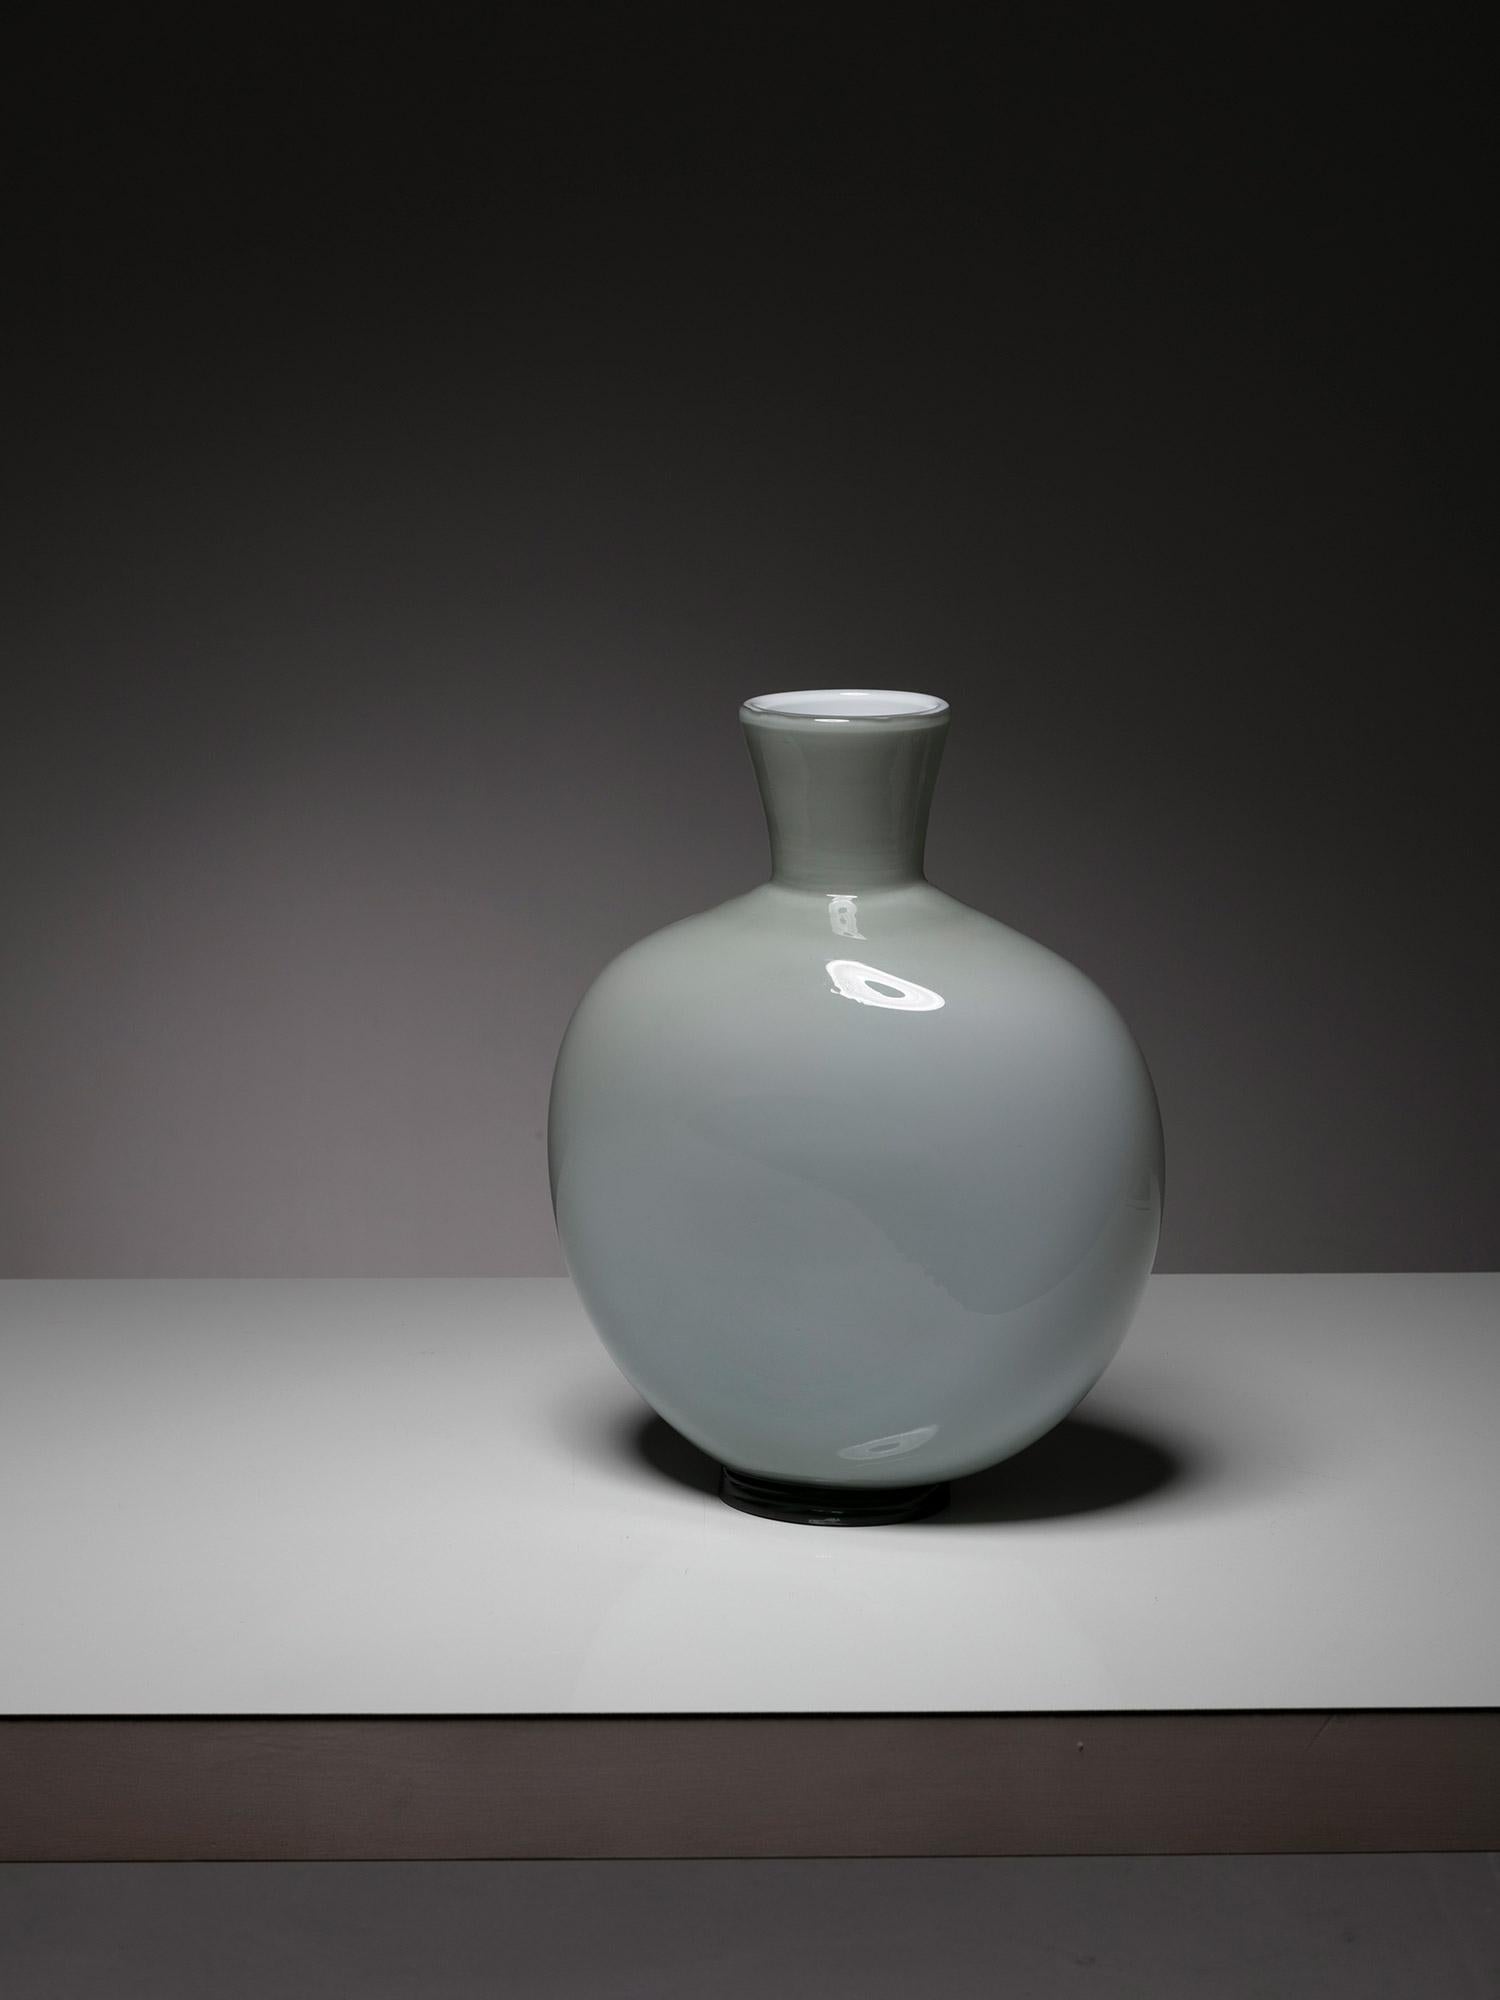 Vase von Tomaso Buzzi für Venini.
Dieses Stück aus der Produktion des Blauen Katalogs wurde ursprünglich 1933 entworfen.